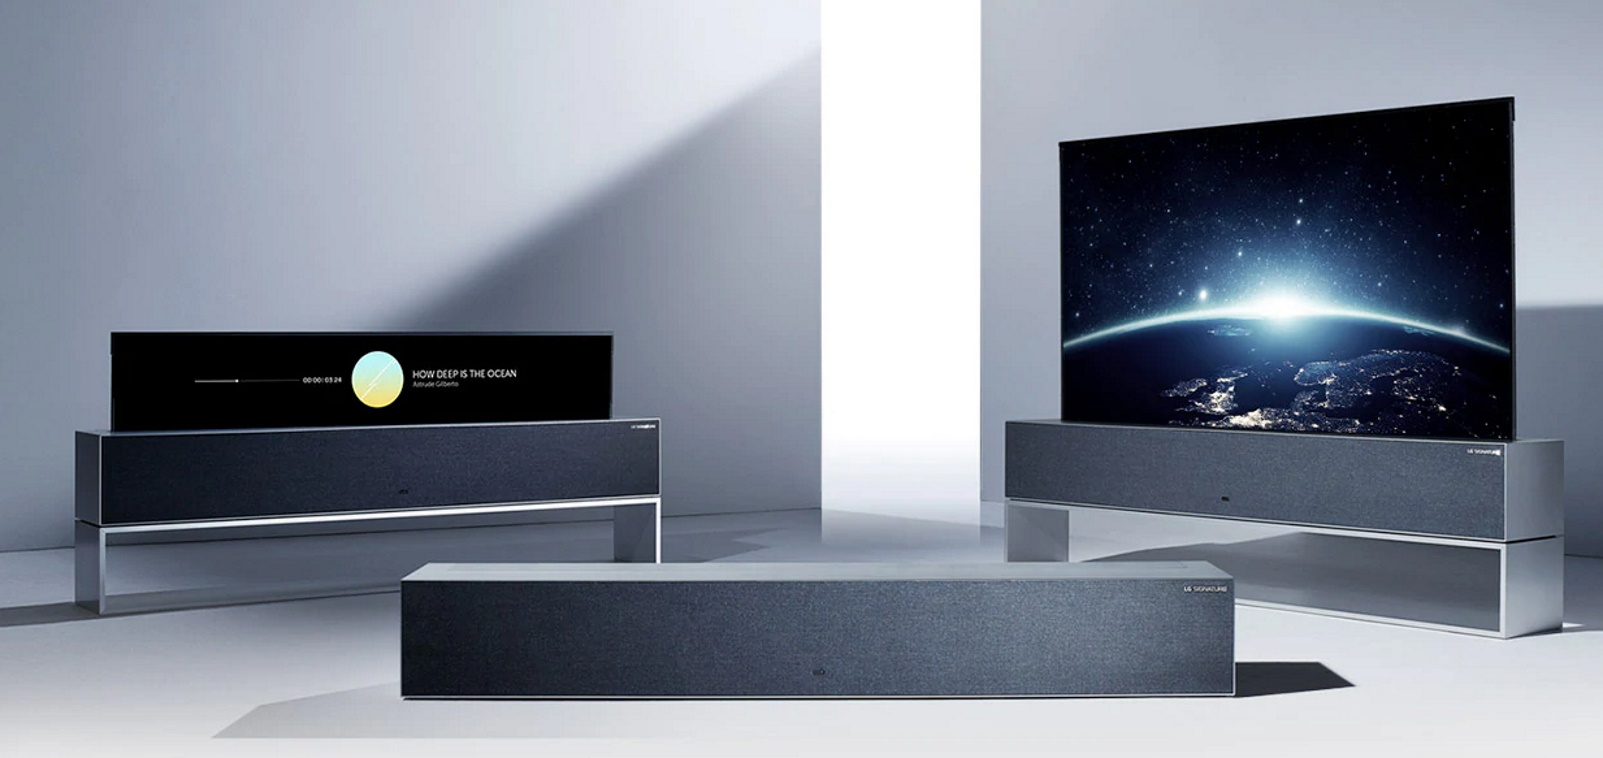 LG verkauft jede Menge OLED-TVs, bloß die aufrollbare Variante nicht |  heise online